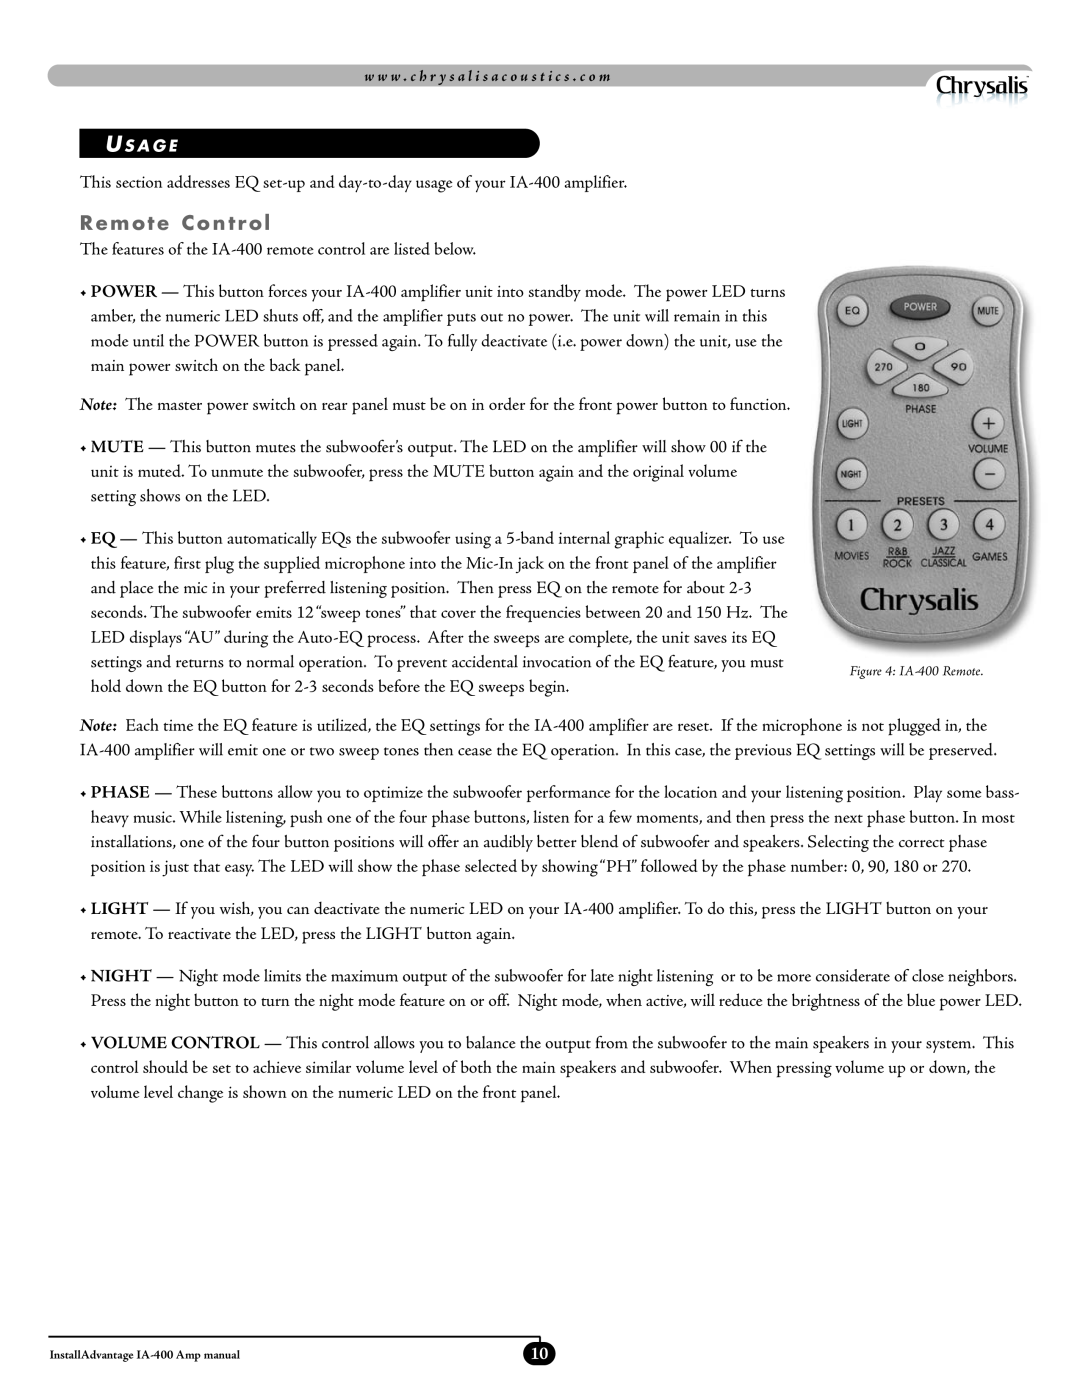 Velodyne Acoustics IA-400 manual Remote Control, U S A G E 